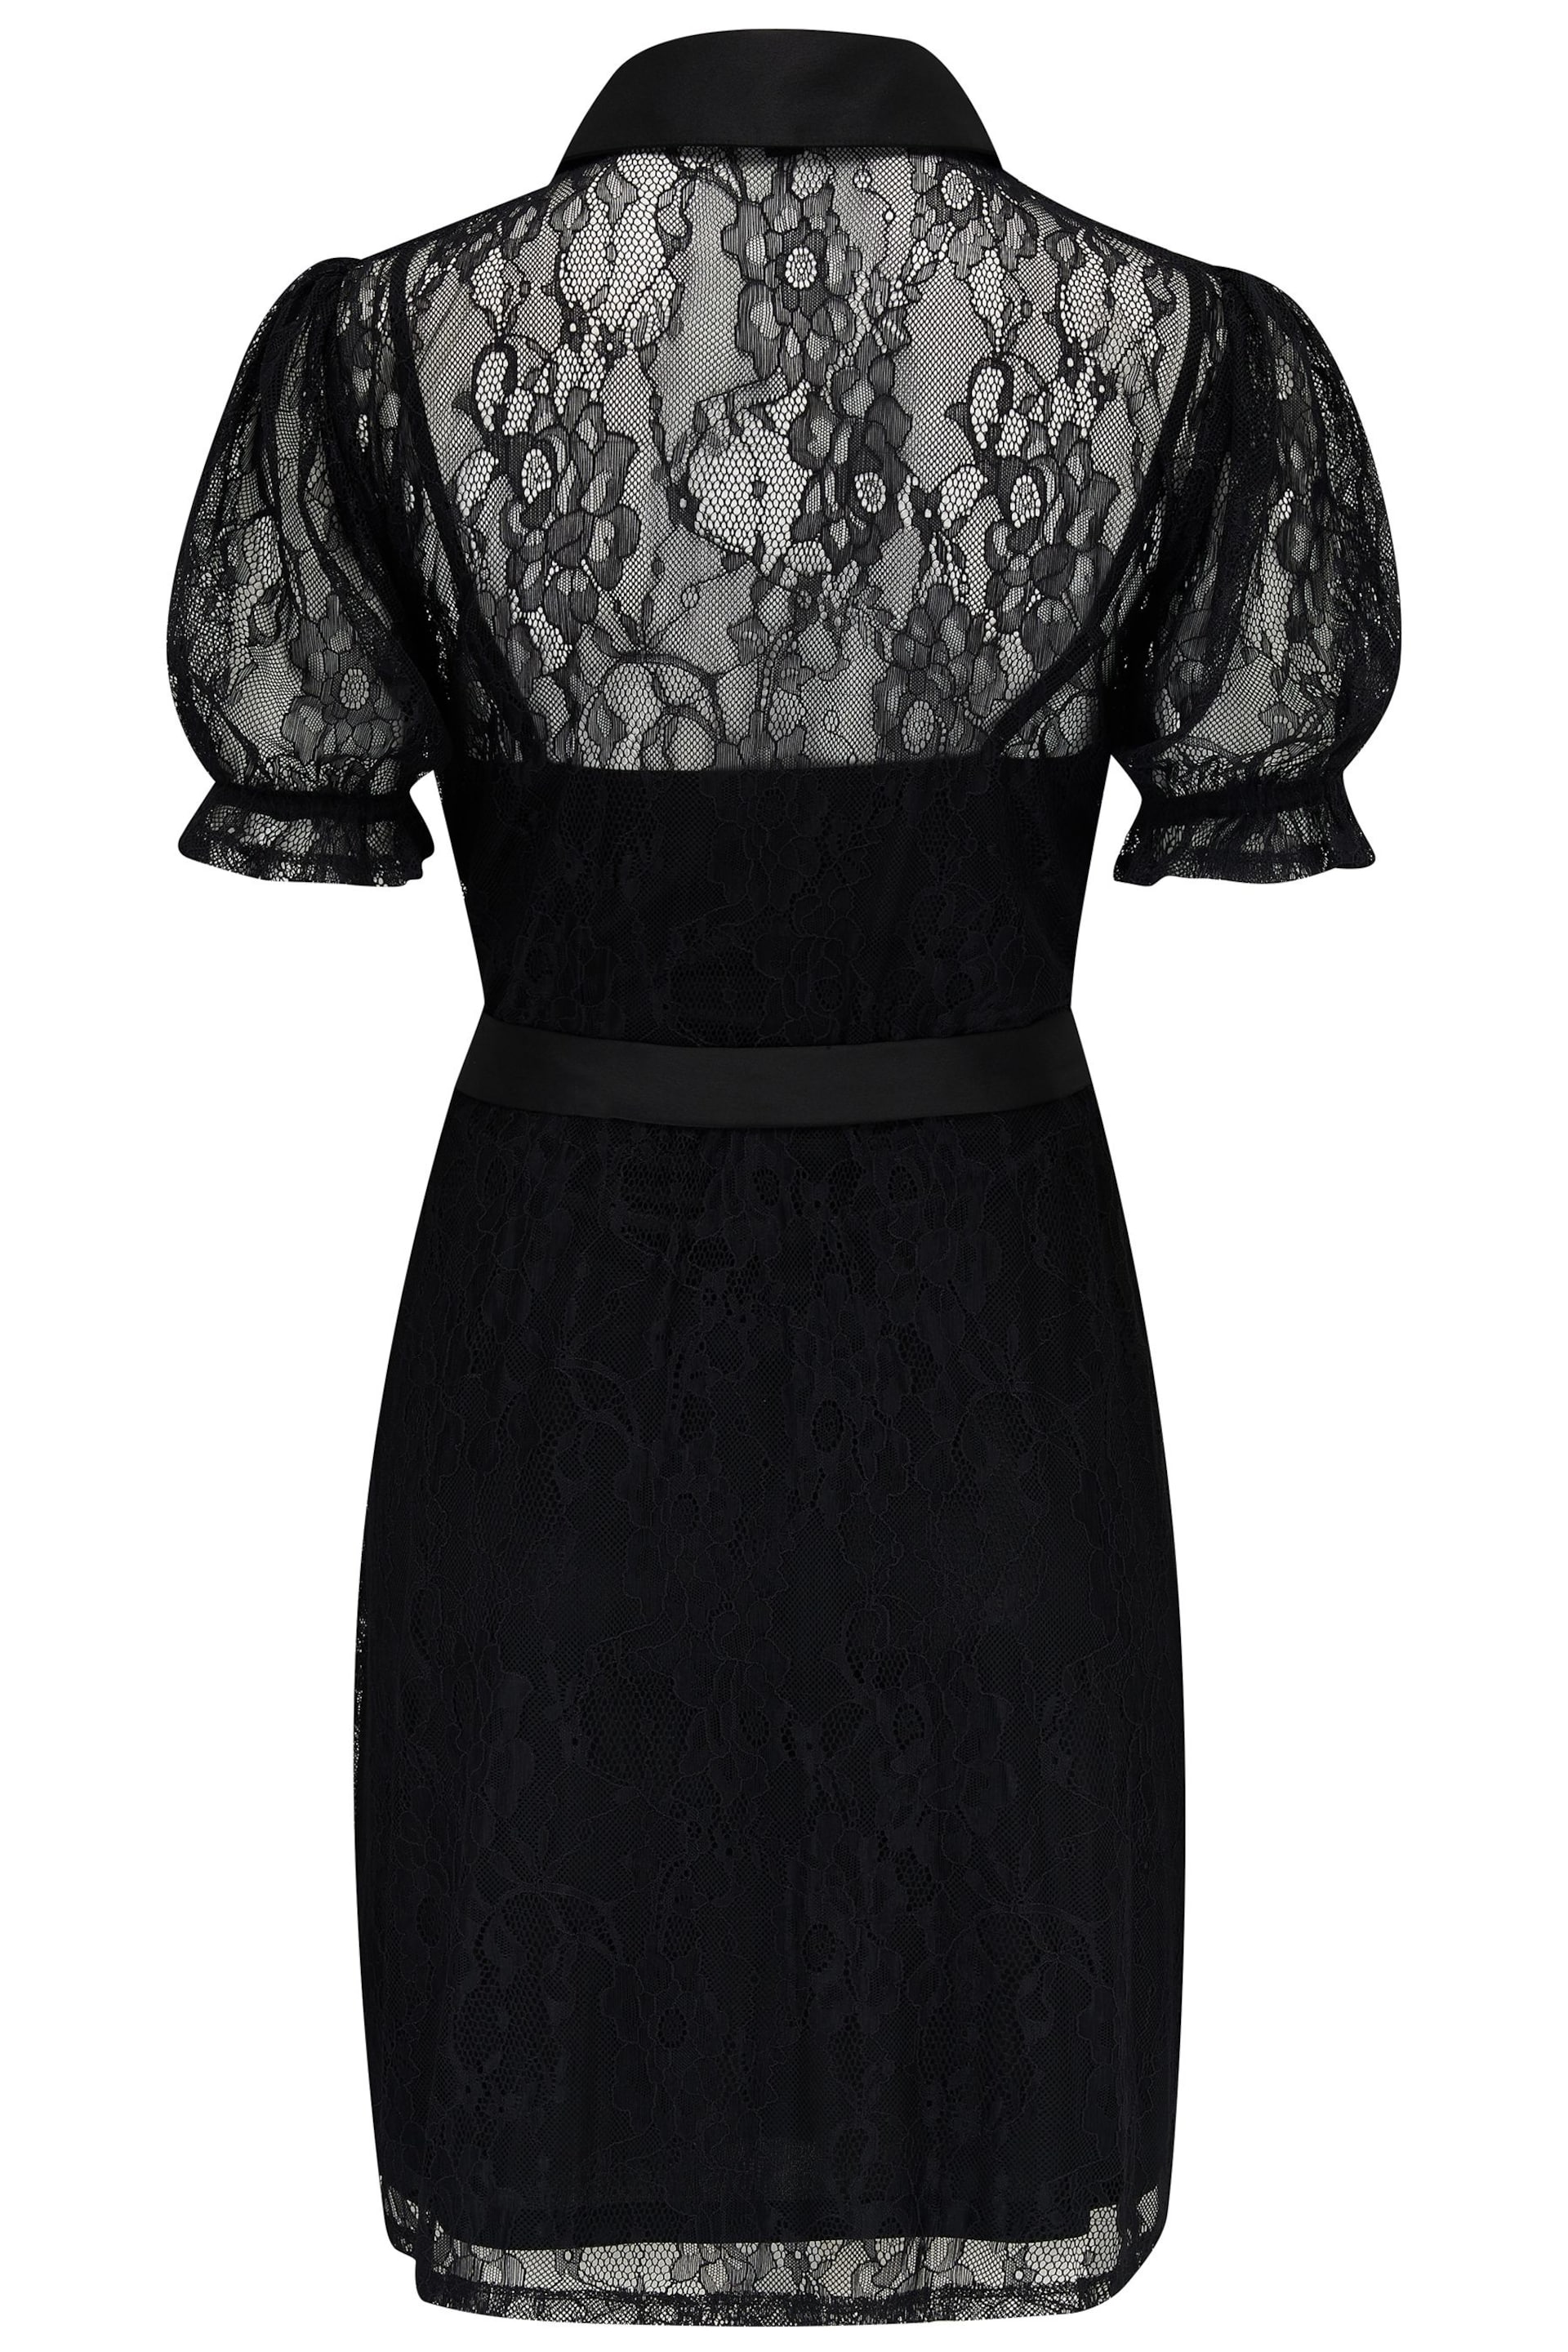 Pour Moi Black Clara Lace Shirt Mini Dress - Image 5 of 5